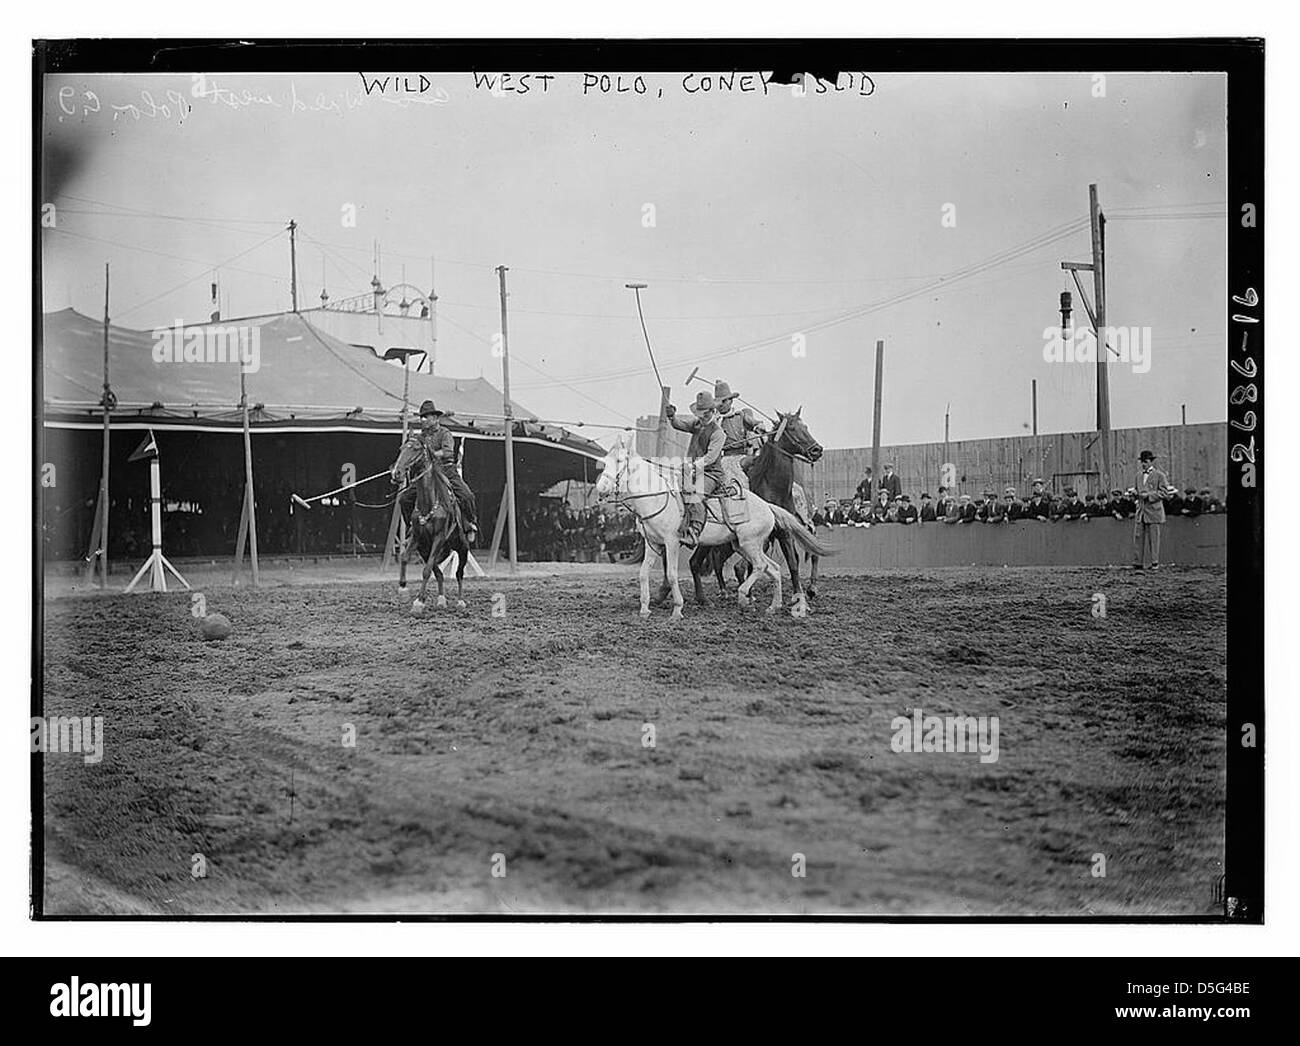 Wild West Polo, Coney Isl. (LOC) Stock Photo